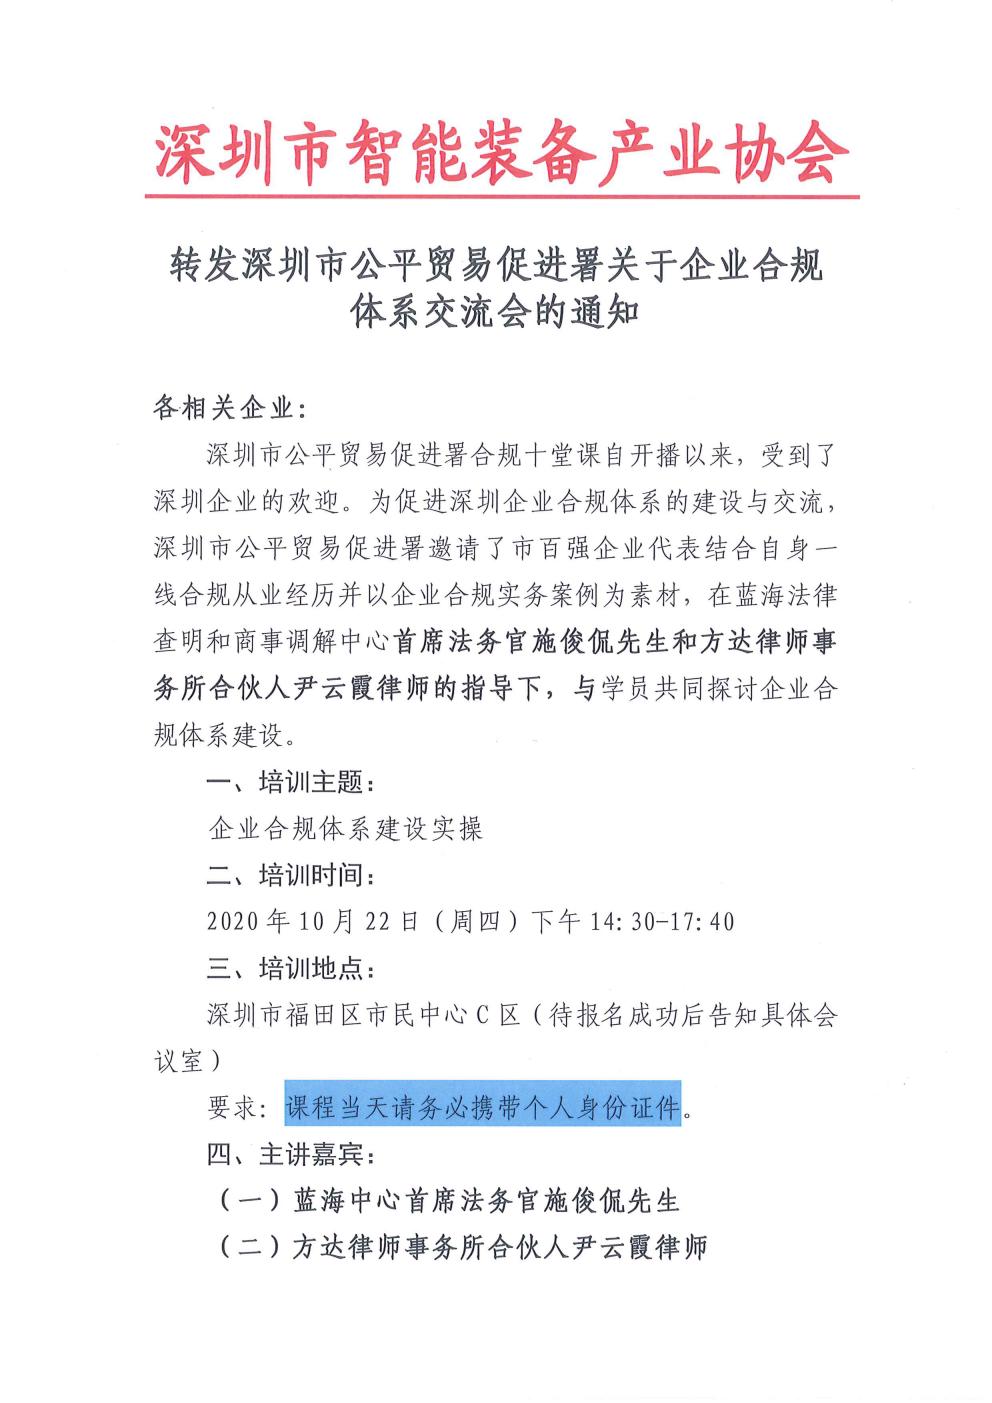 转发深圳市公平贸易促进署关于企业合规体系